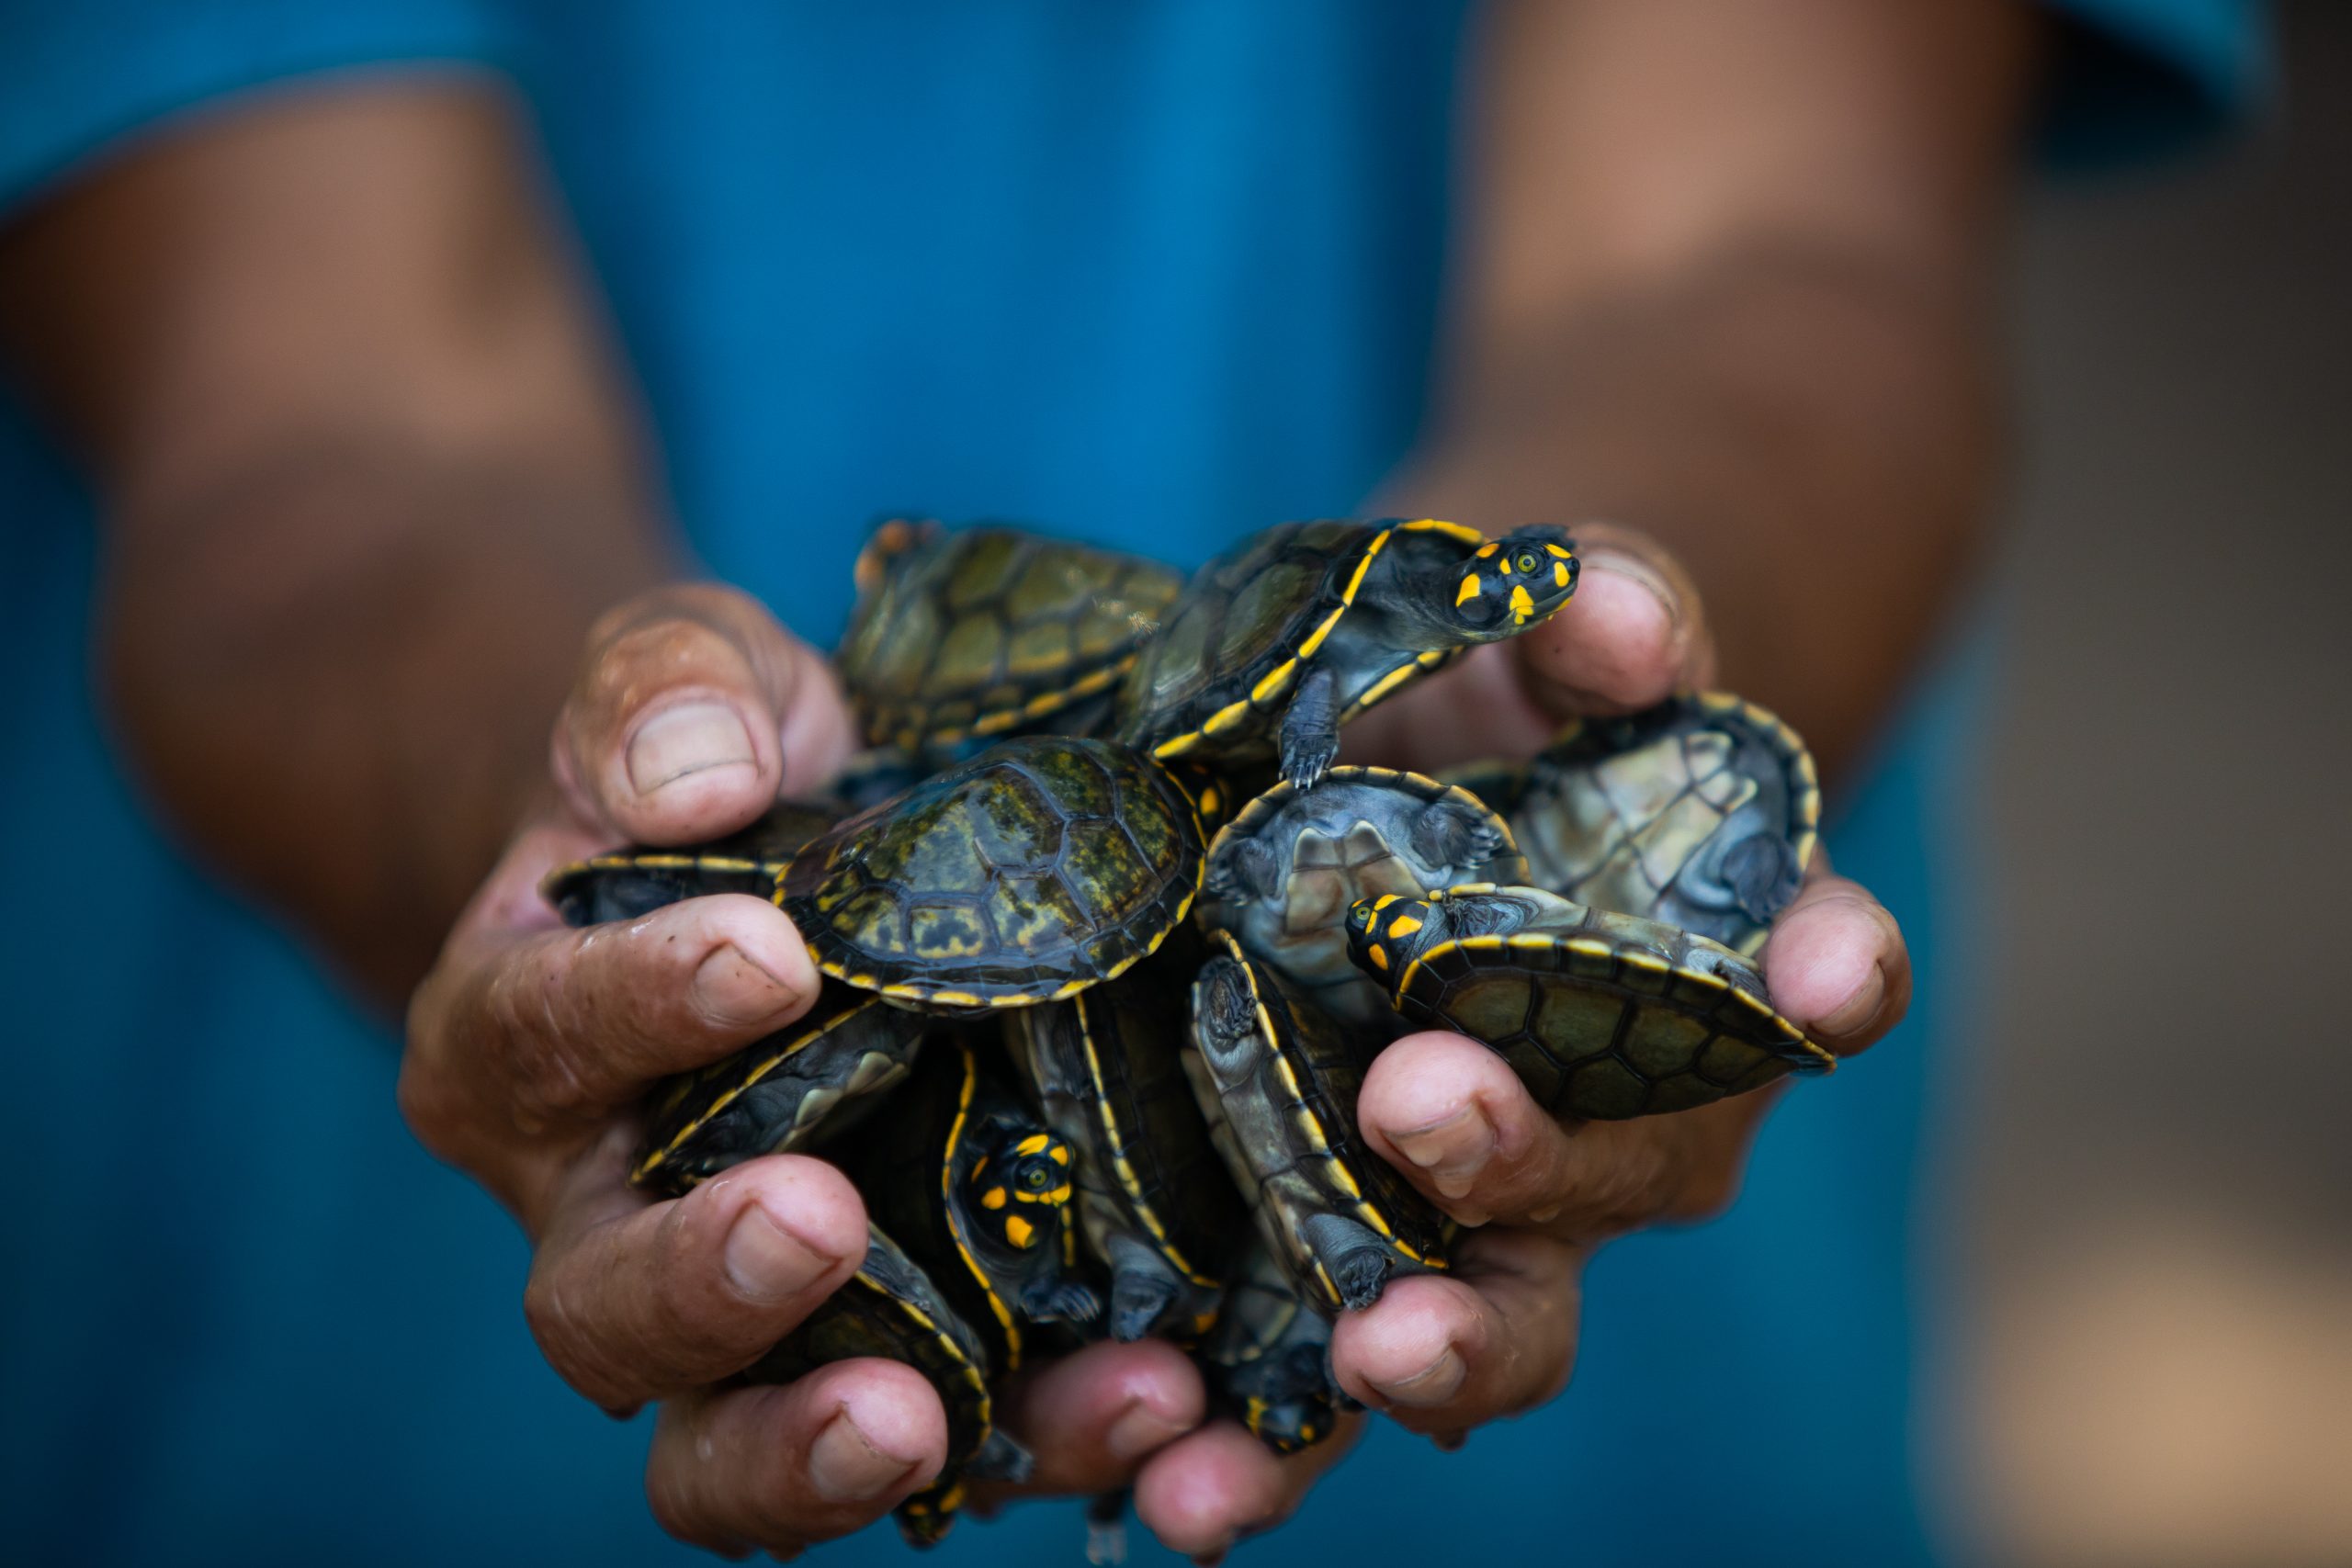 IMG 4327 scaled - Cerca de 4 mil filhotes de tartarugas amazônicas serão soltos por moradores do Pará neste sábado